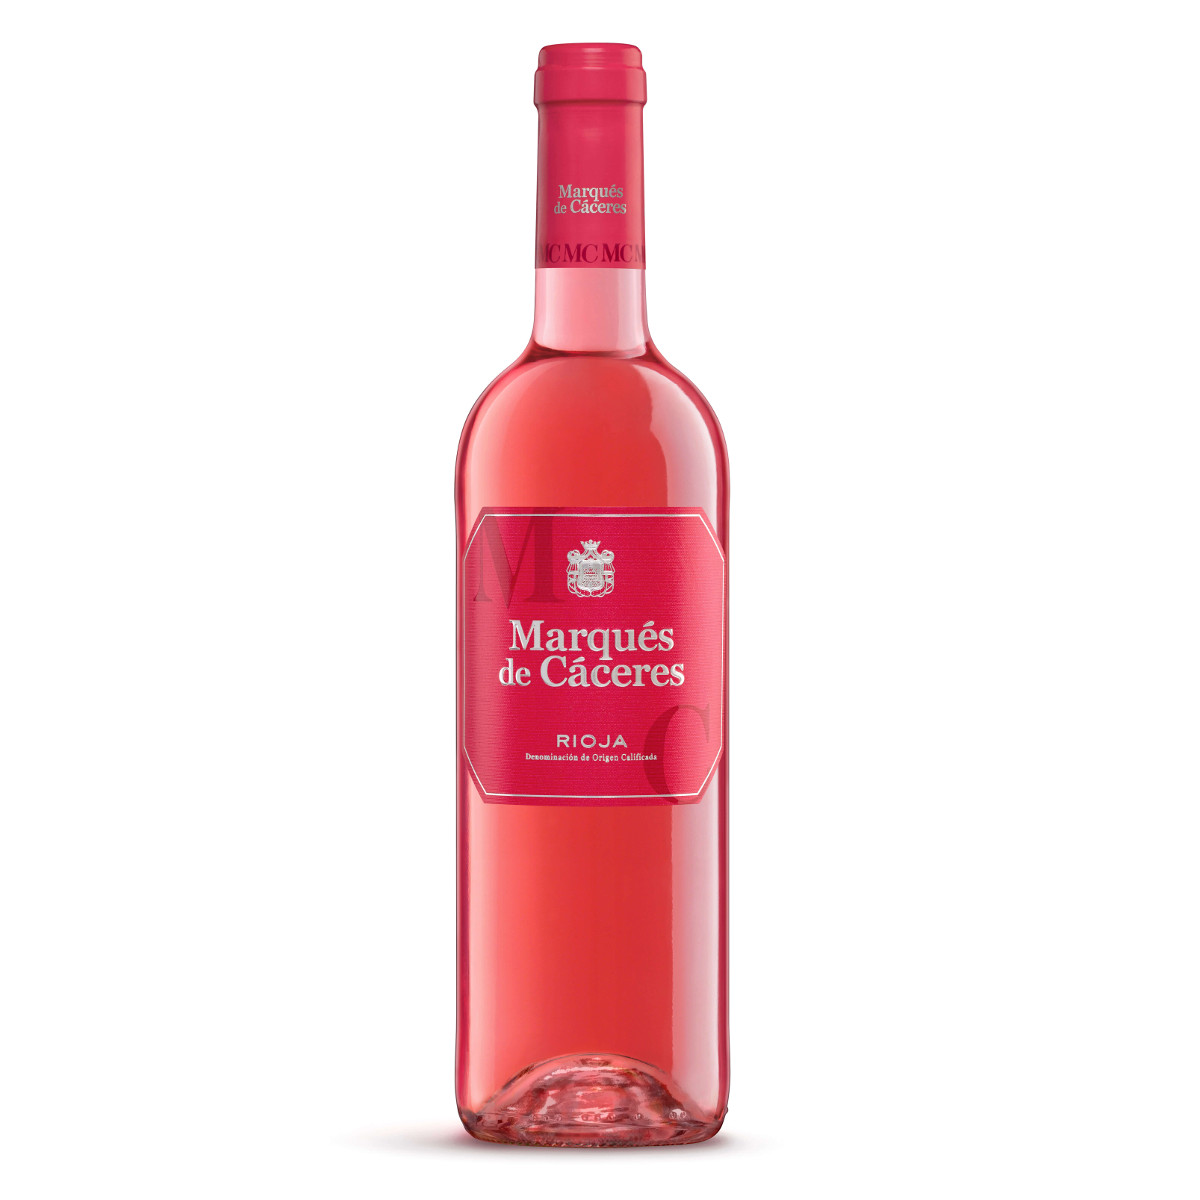 Rosé wine Smartbites de Cáceres. Marqués